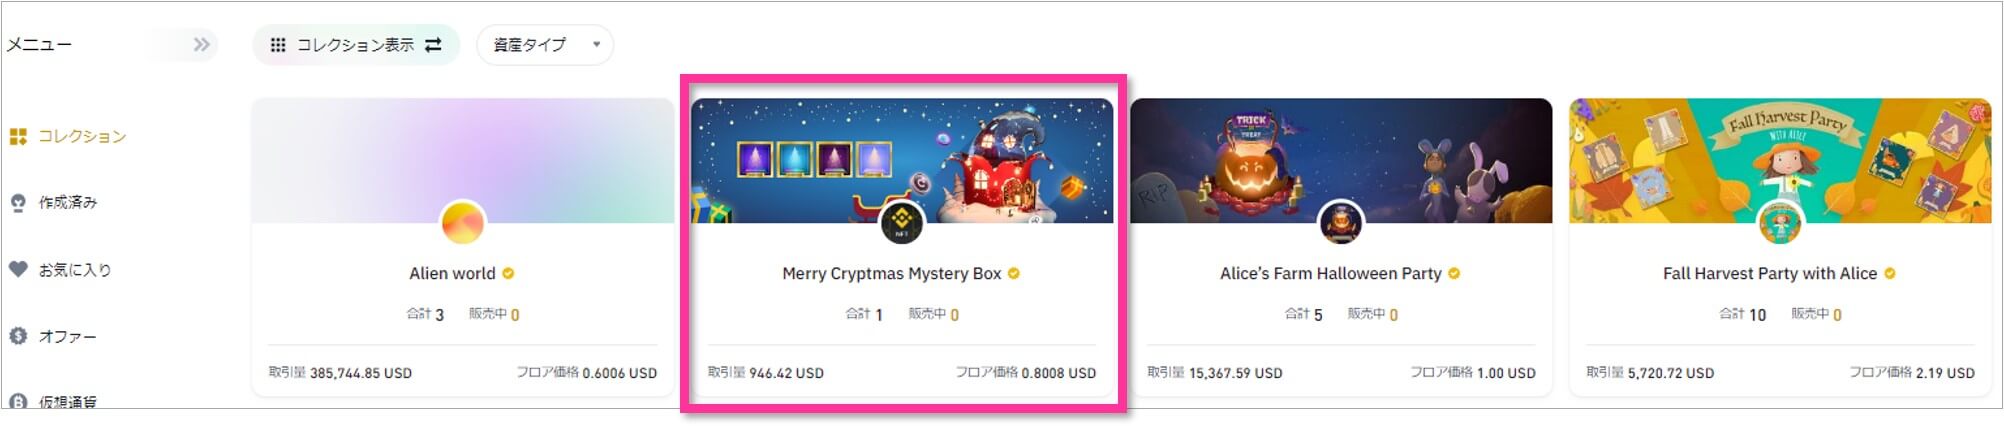 「Merry Cryptmas Mystery Box」を実際に売却